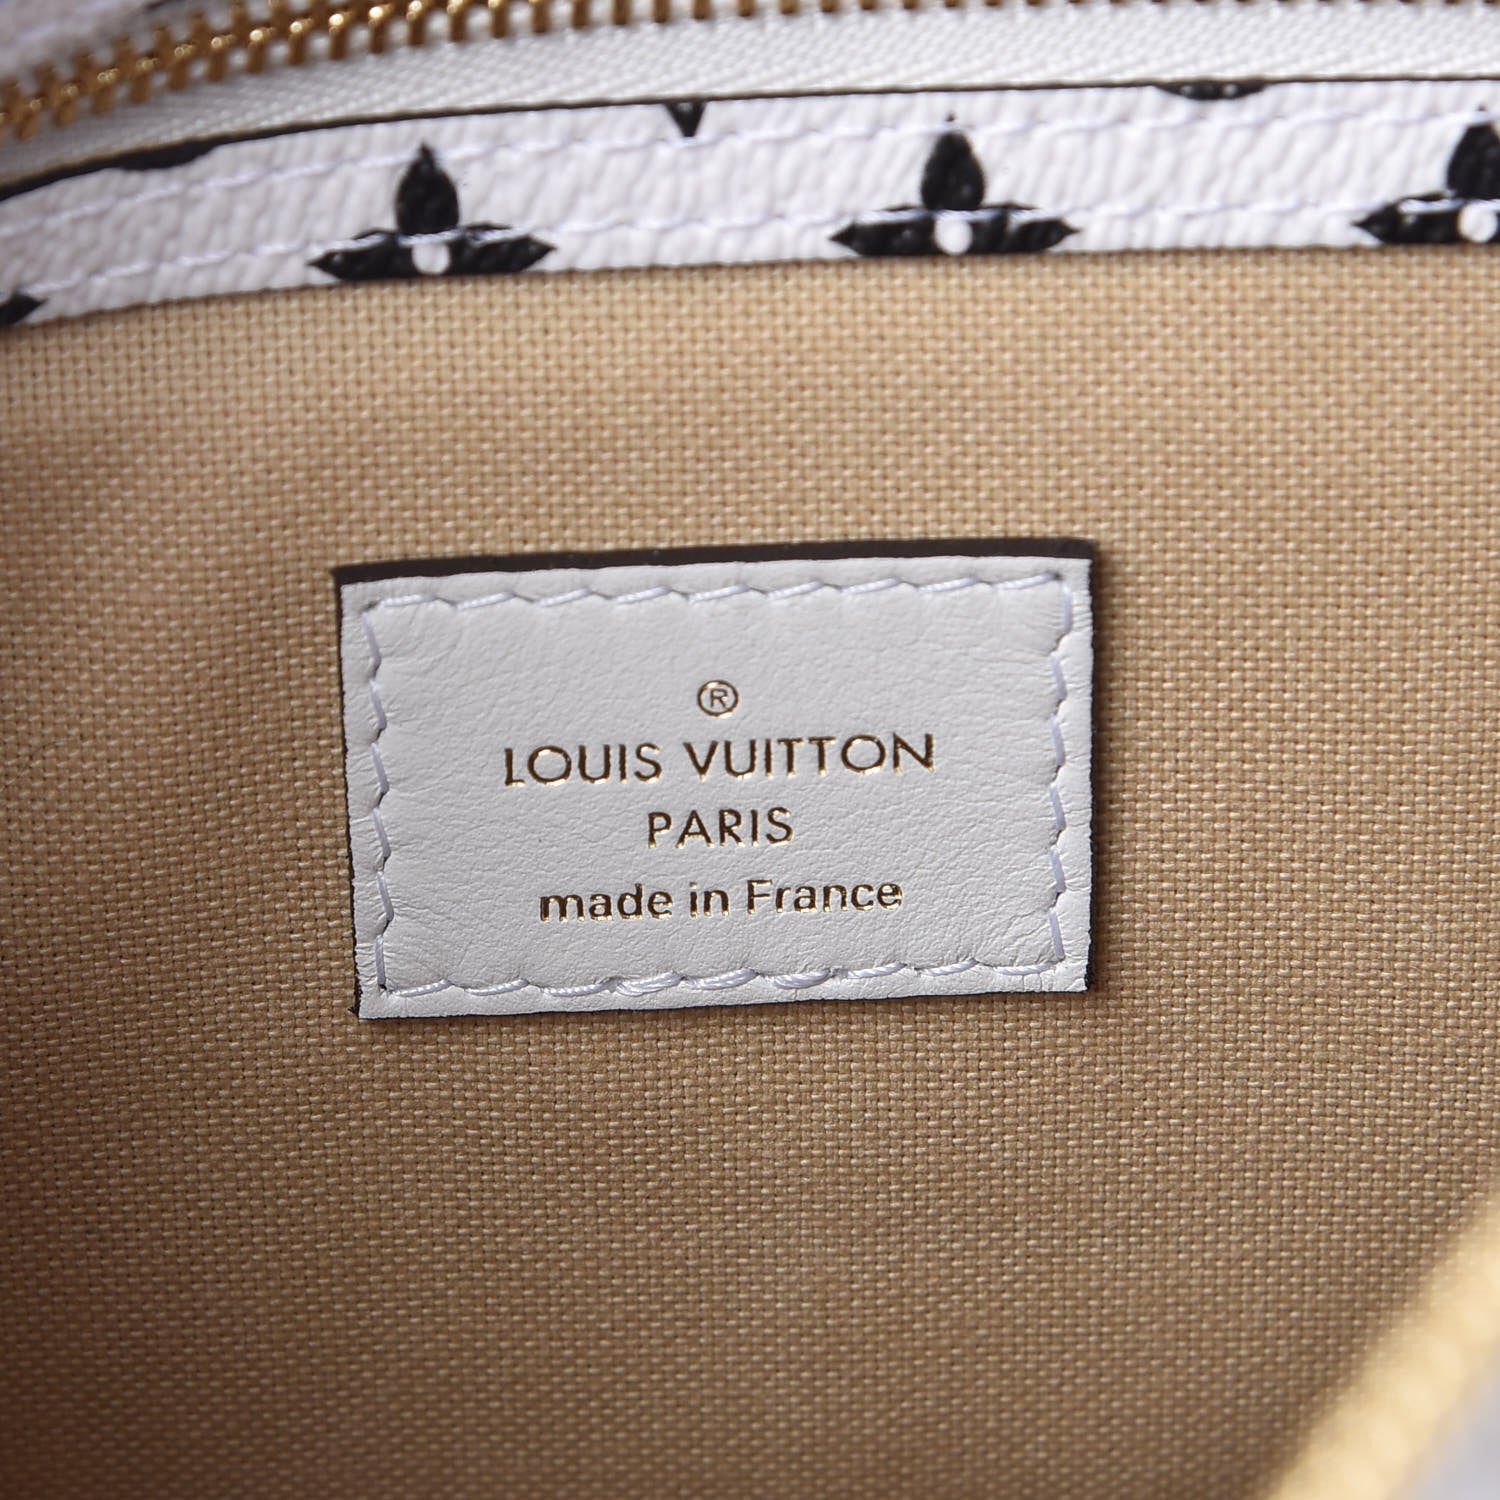 Louis Vuitton Khaki Giant Reverse Monogram Speedy Bandoulière 30